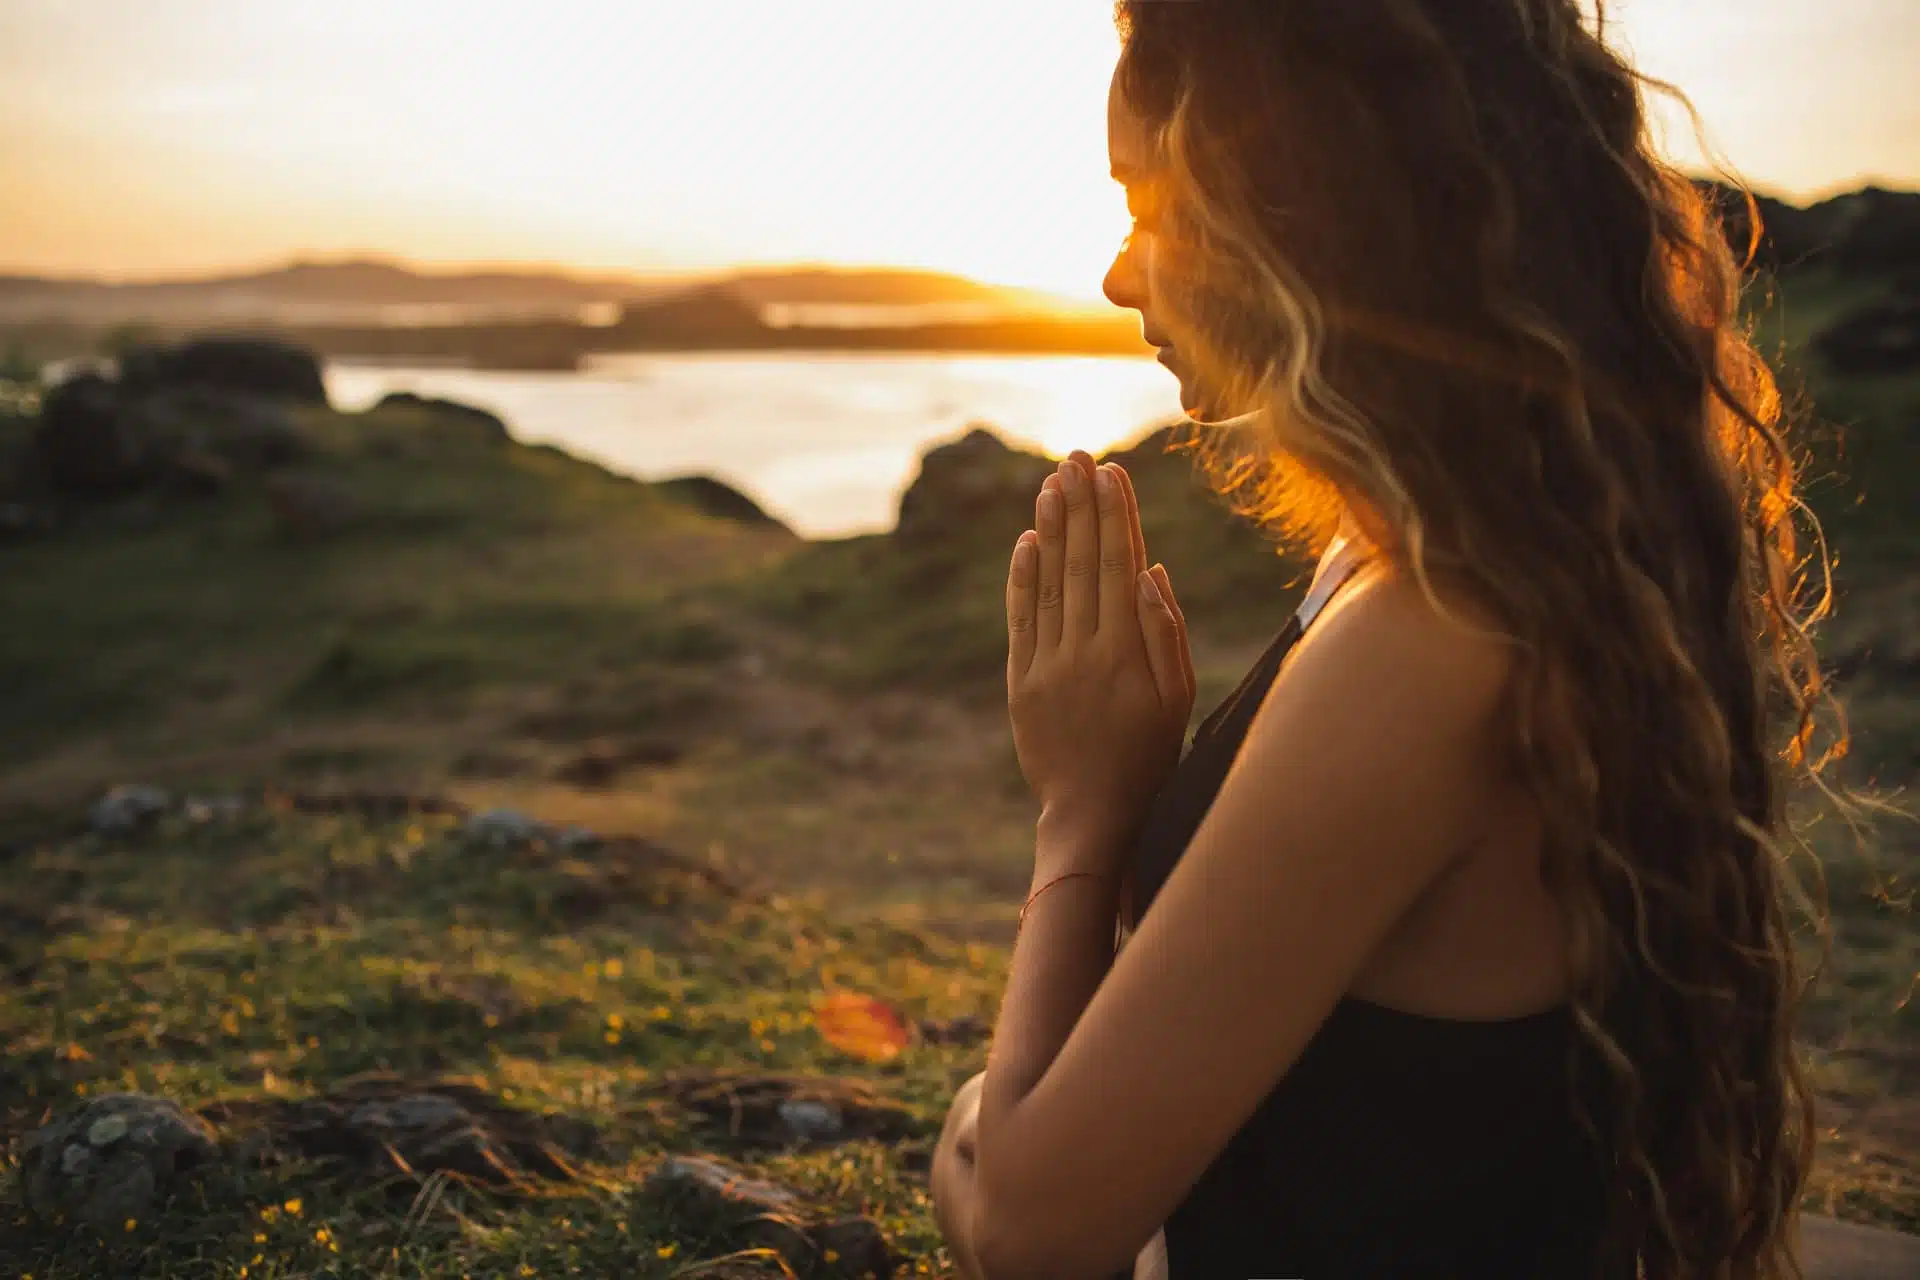 Woman praying alone at sunrise